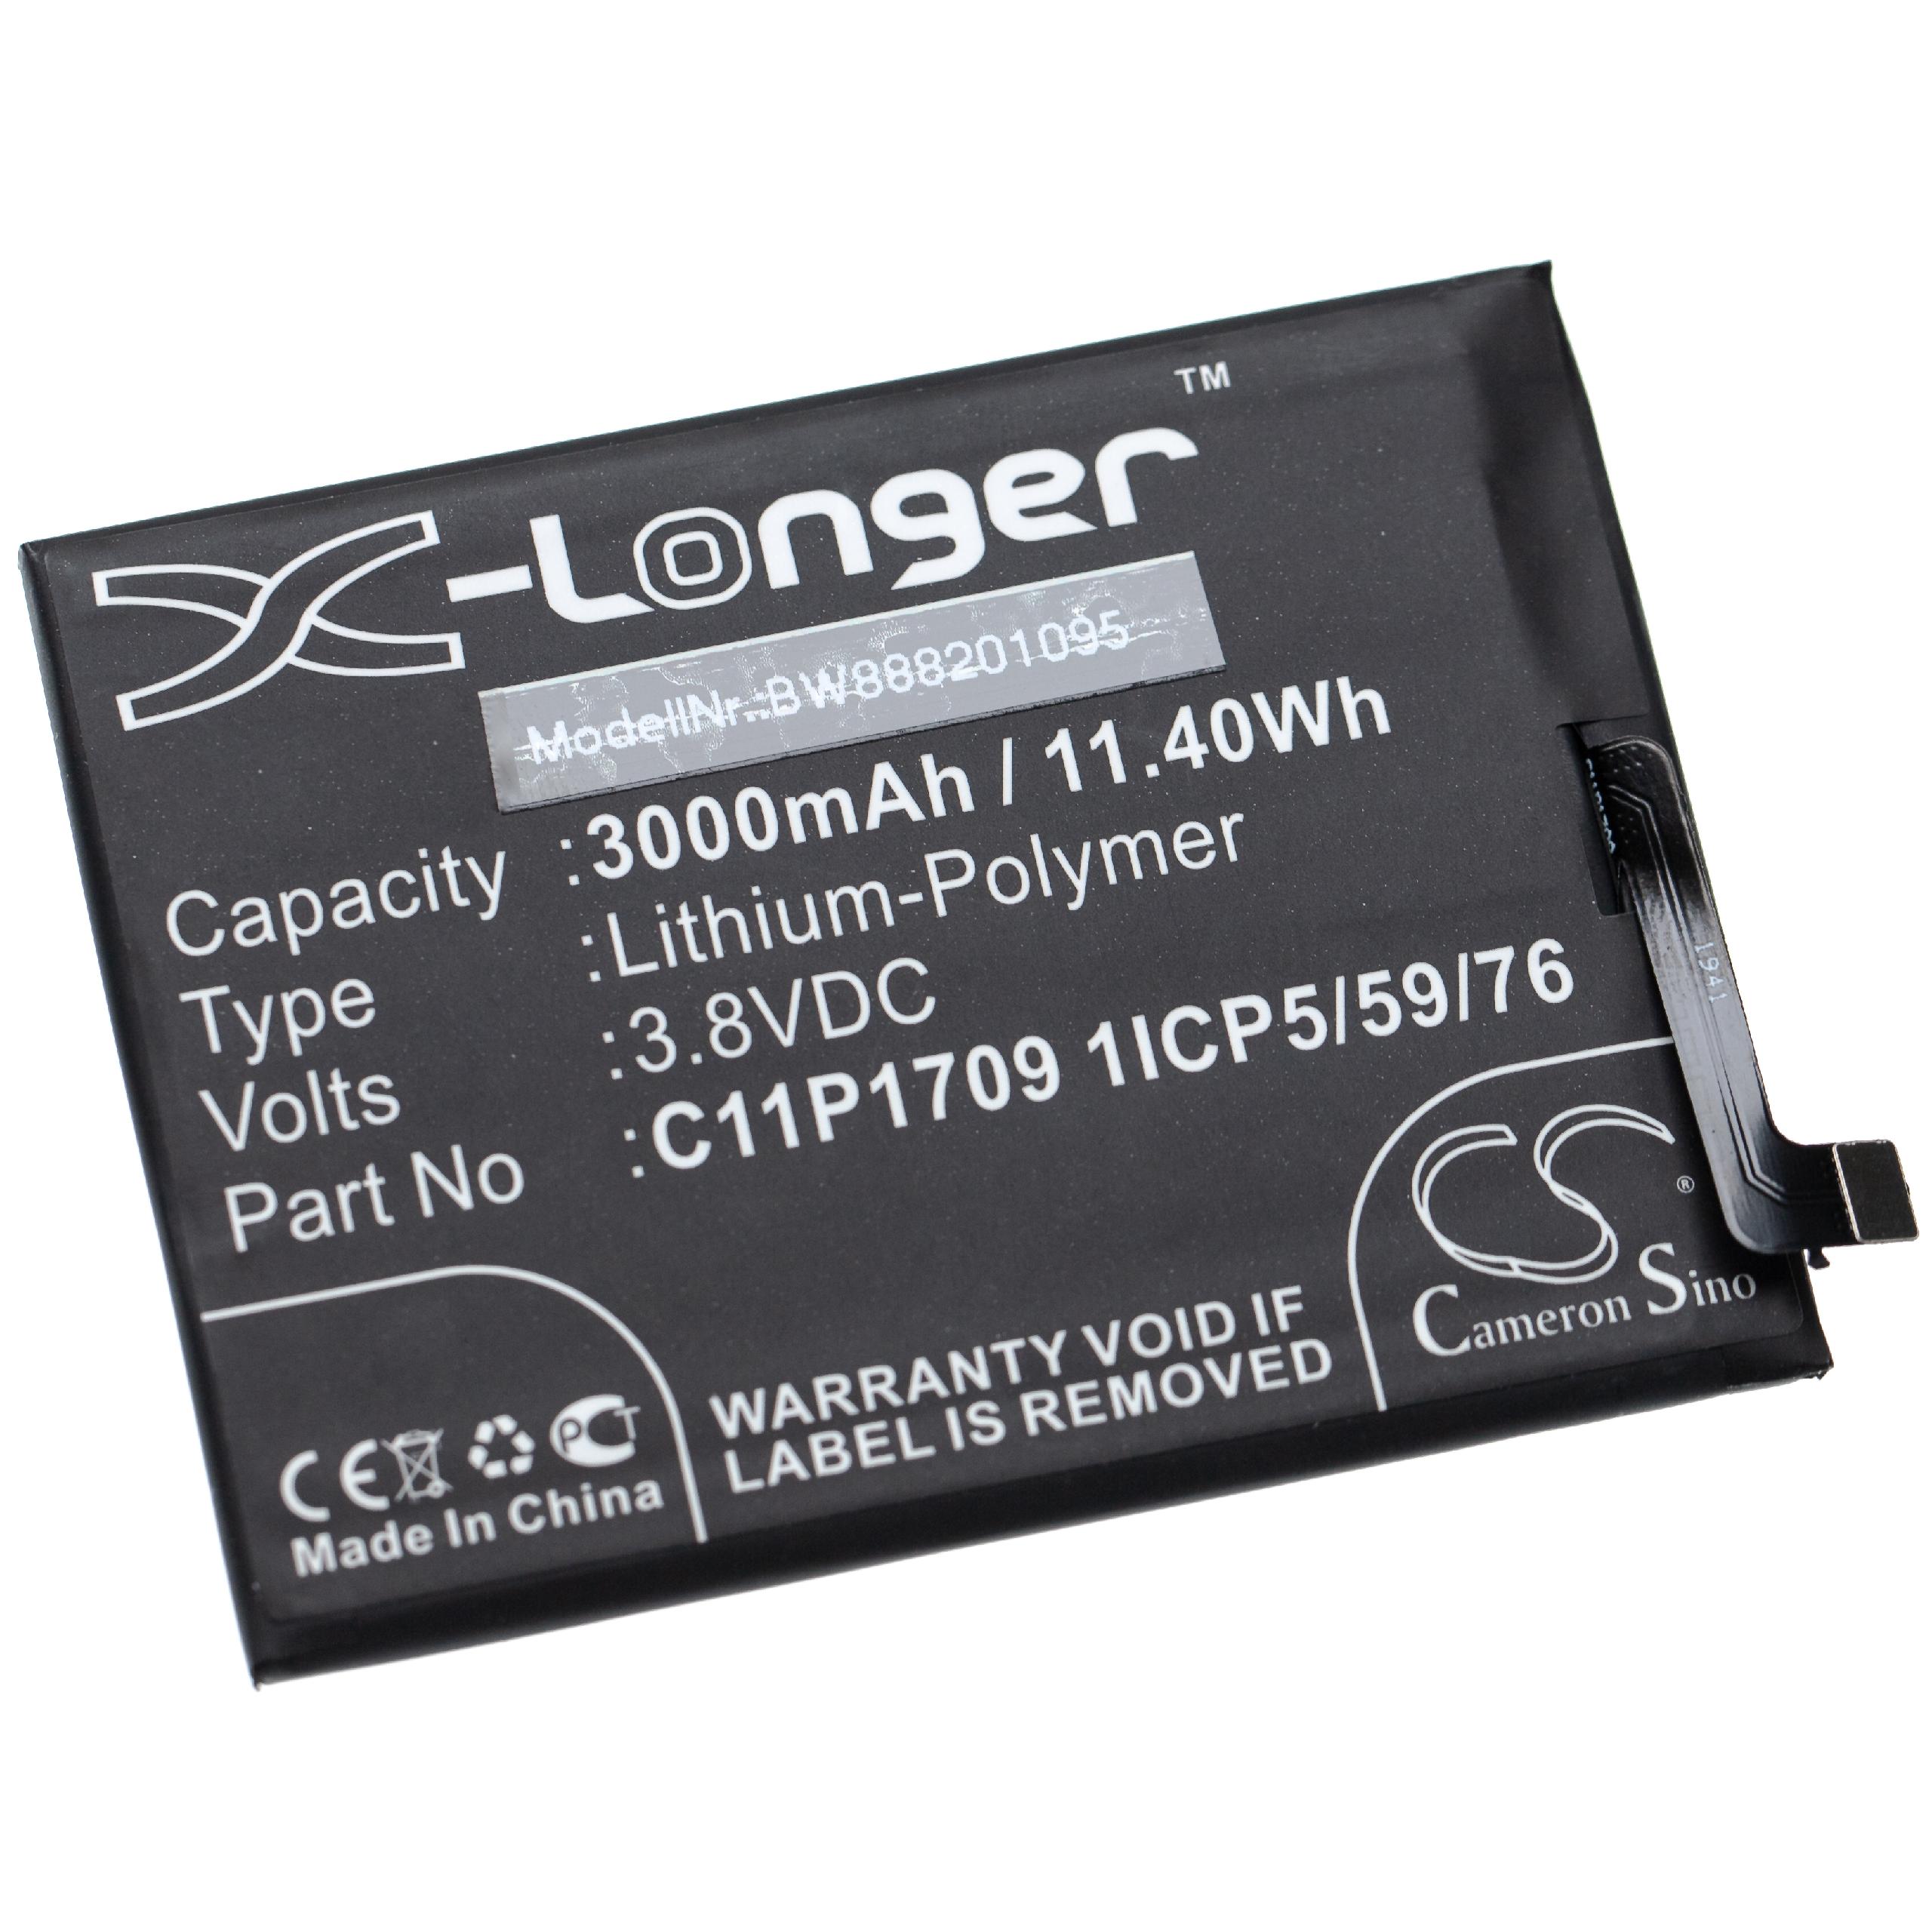 Batteria sostituisce Asus C11P1709 1ICP5/59/76 per cellulare Asus - 3000mAh 3,8V Li-Poly